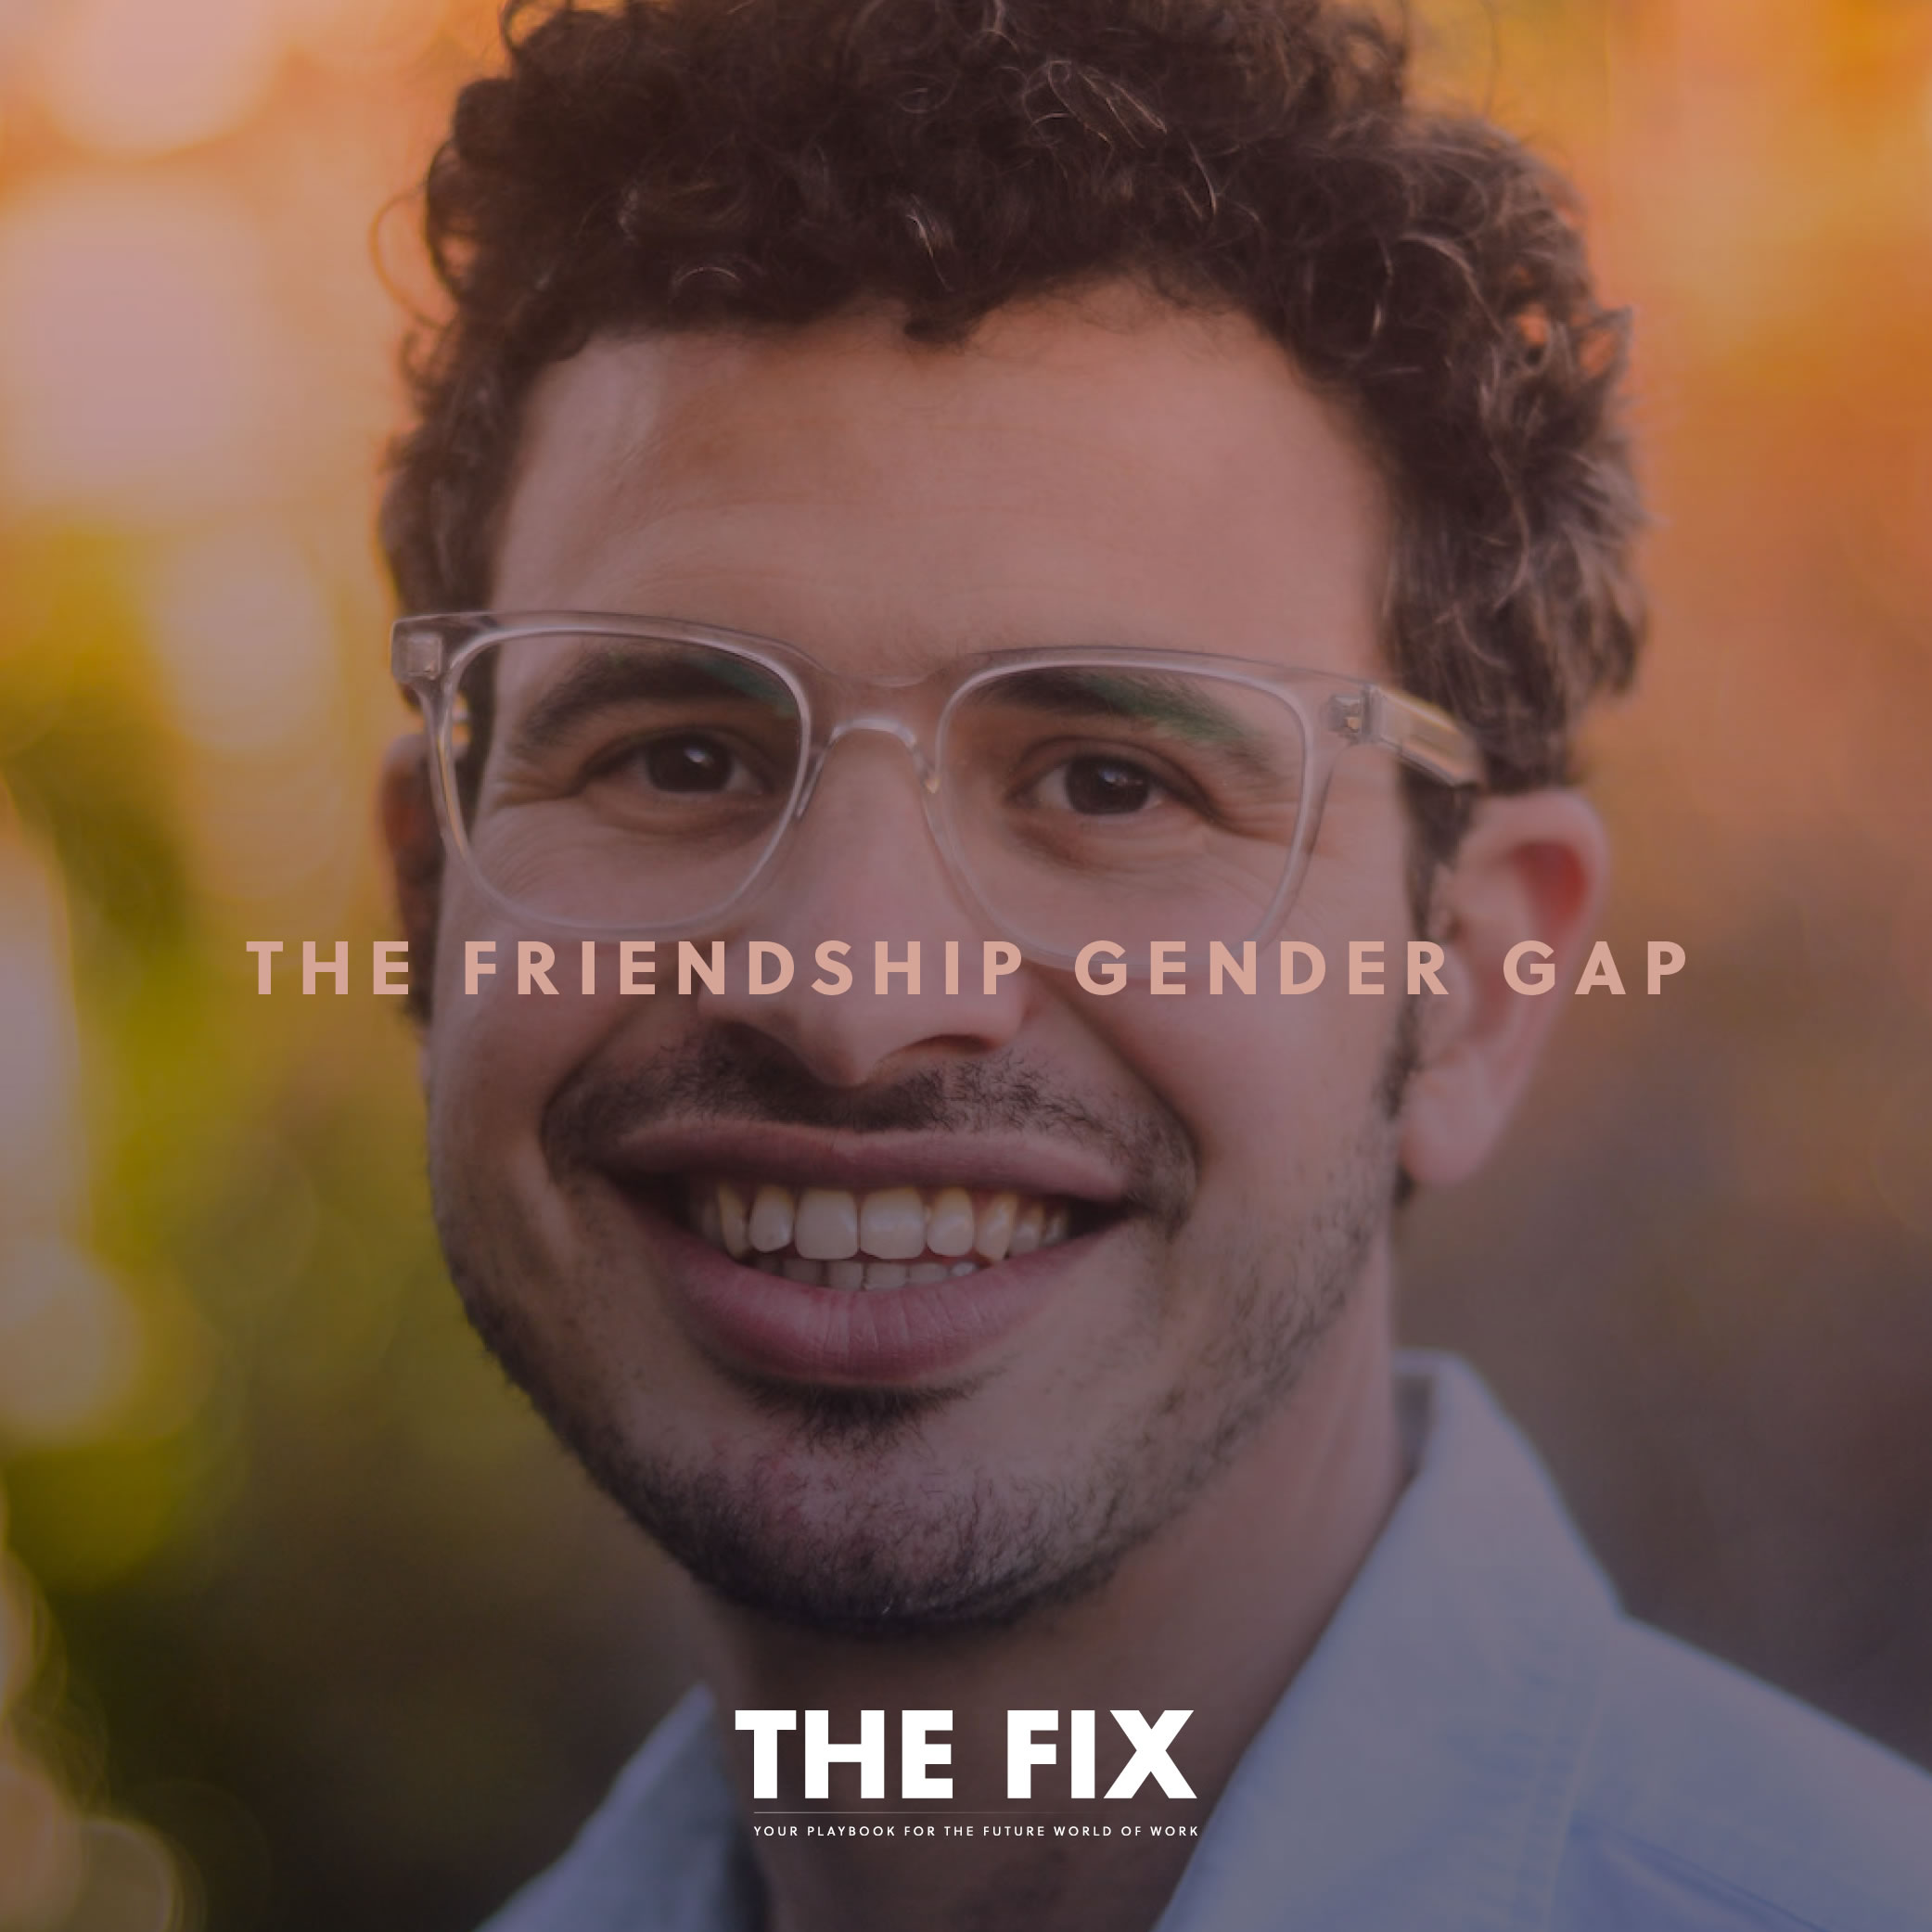 The Friendship Gender Gap